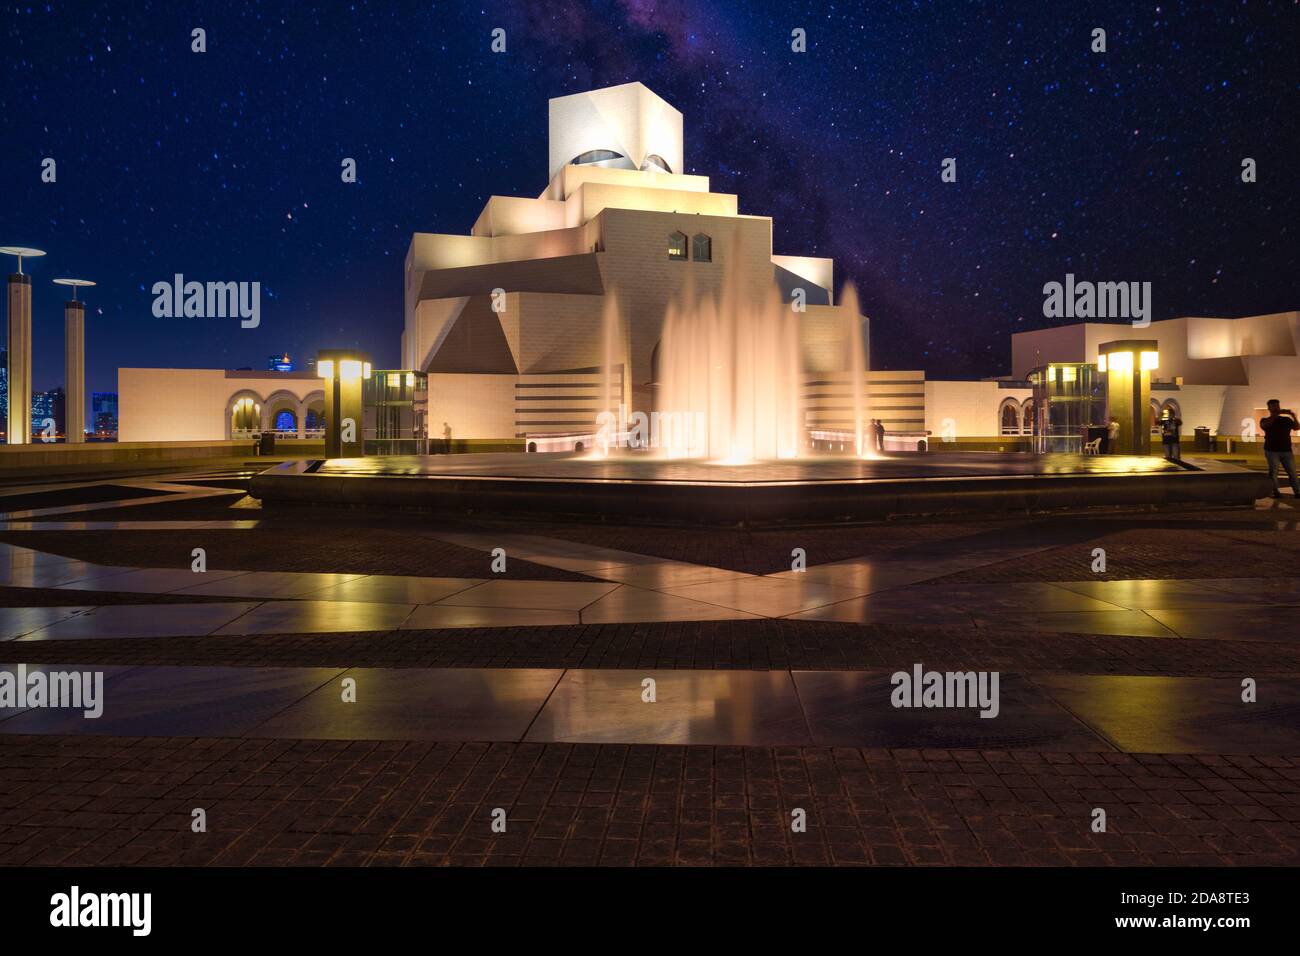 Museum für Islamische Kunst in Doha Katar Außenaufnahme Nacht zeigt Brunnen im Vordergrund, Haupteingang zum Museum im Hintergrund und Sterne am Himmel Stockfoto